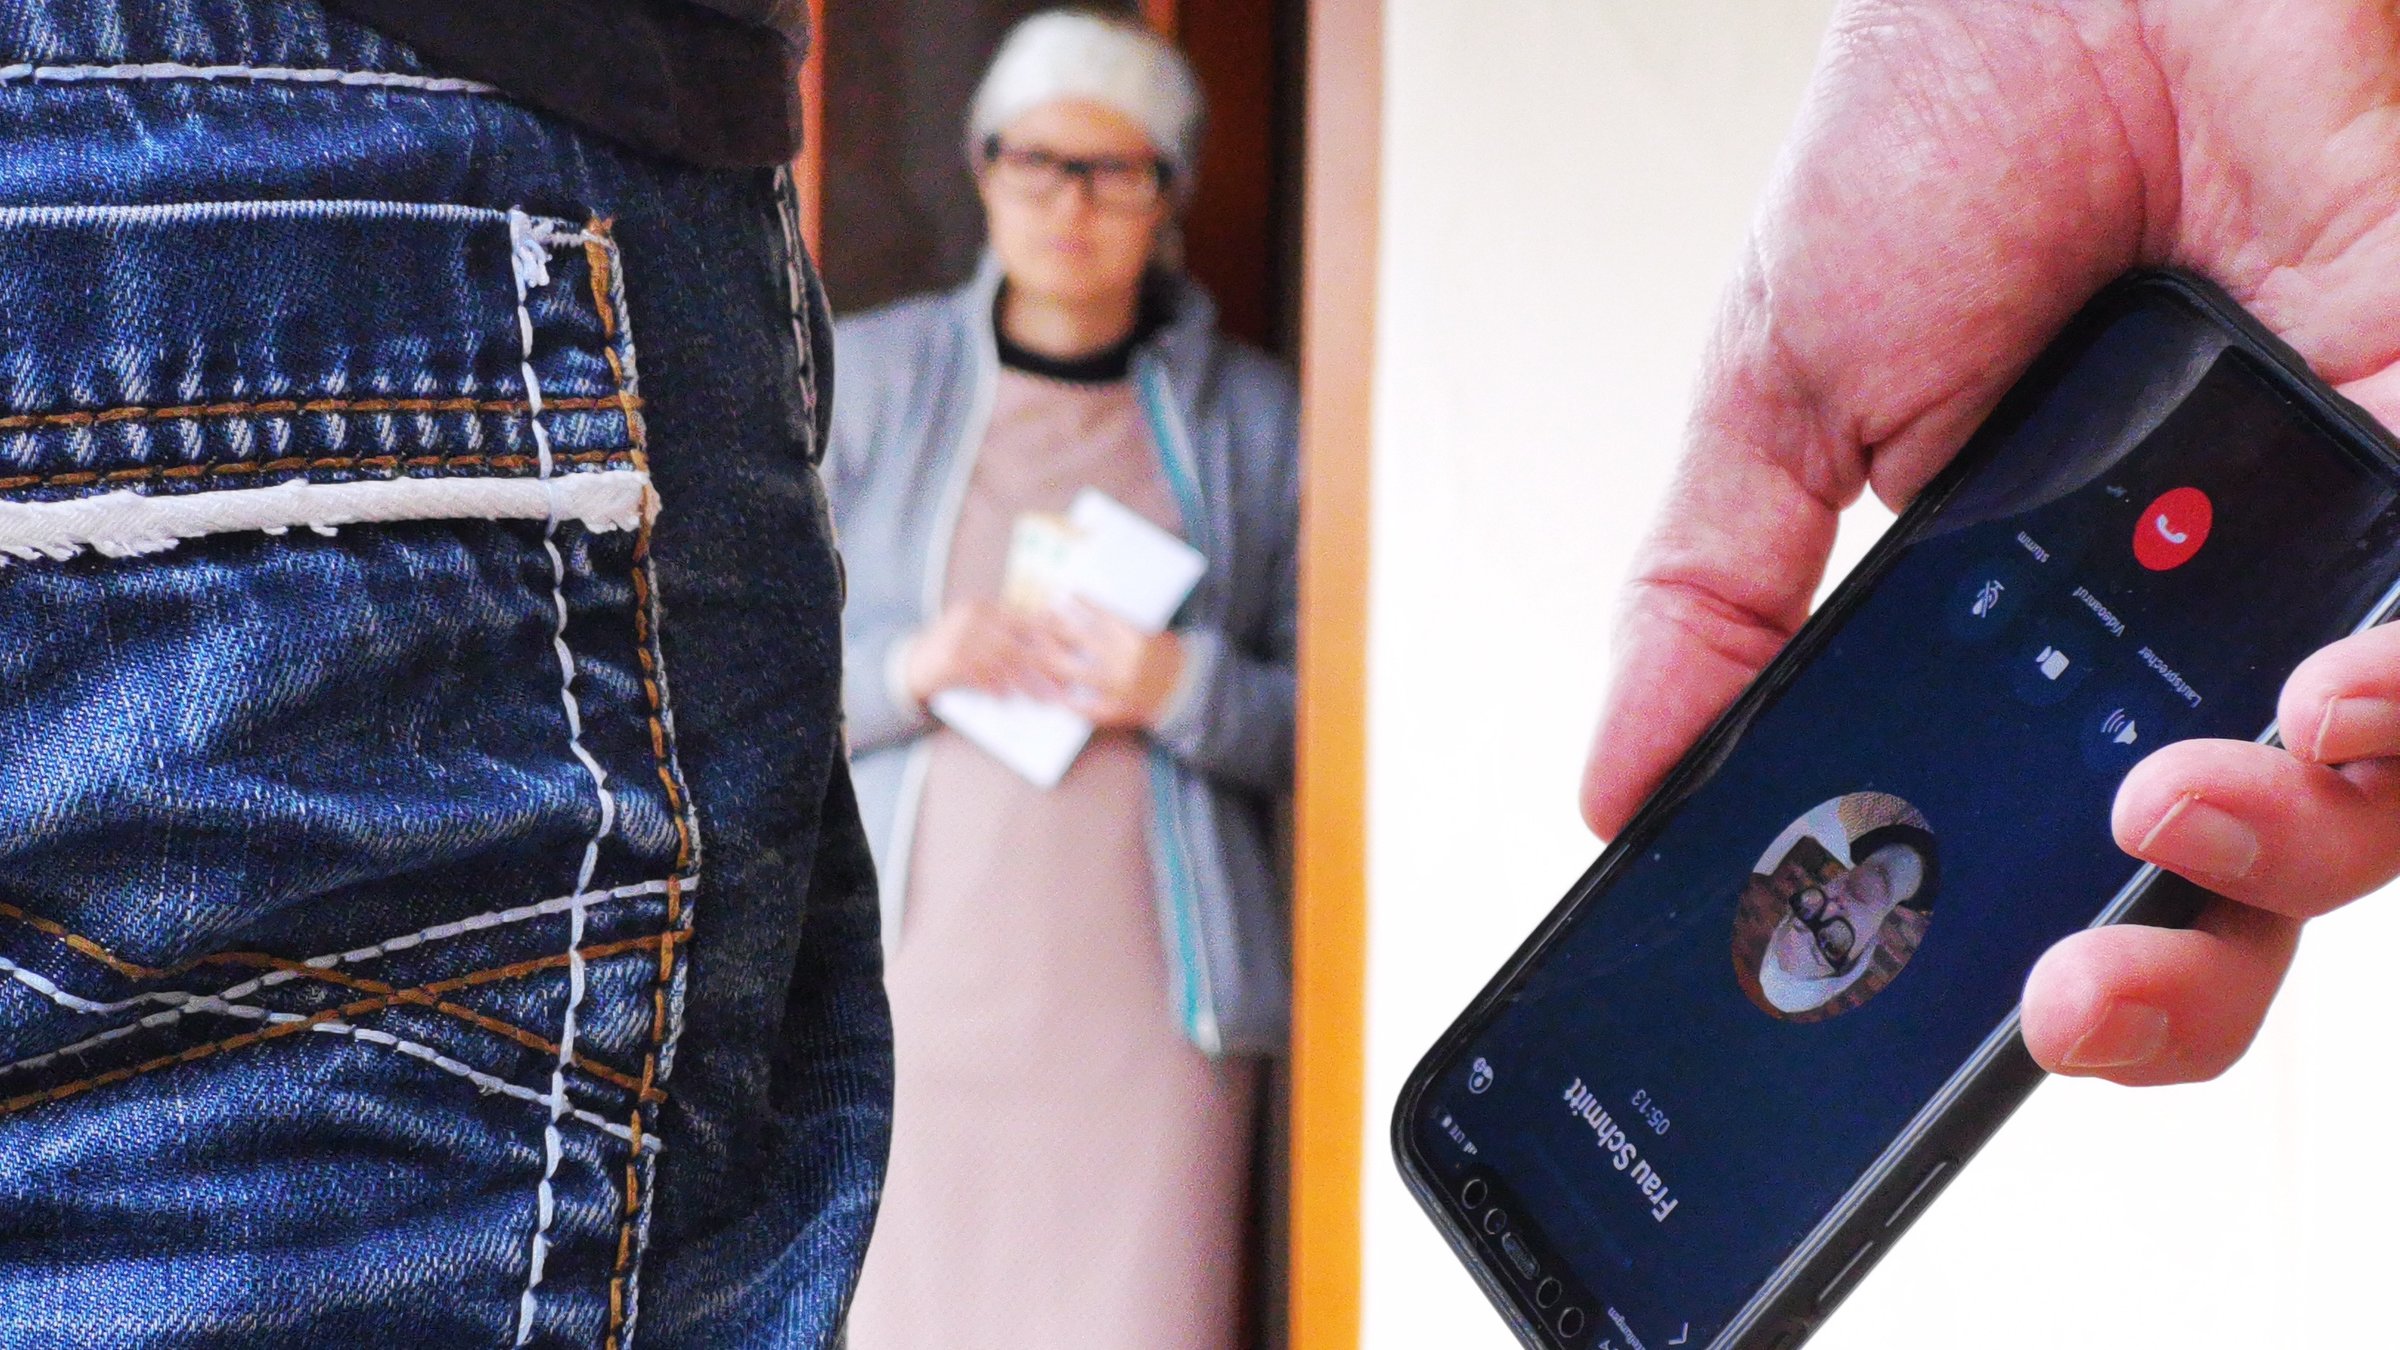 "ZDF.reportage: Vorsicht, Trickdiebe! - Bei Anruf Abzocke!": Symbolbild: Person im Vordergrund  hält ein Smartphone in der Hand. Im Hintergrund ältere weibliche Person in Türeingang.